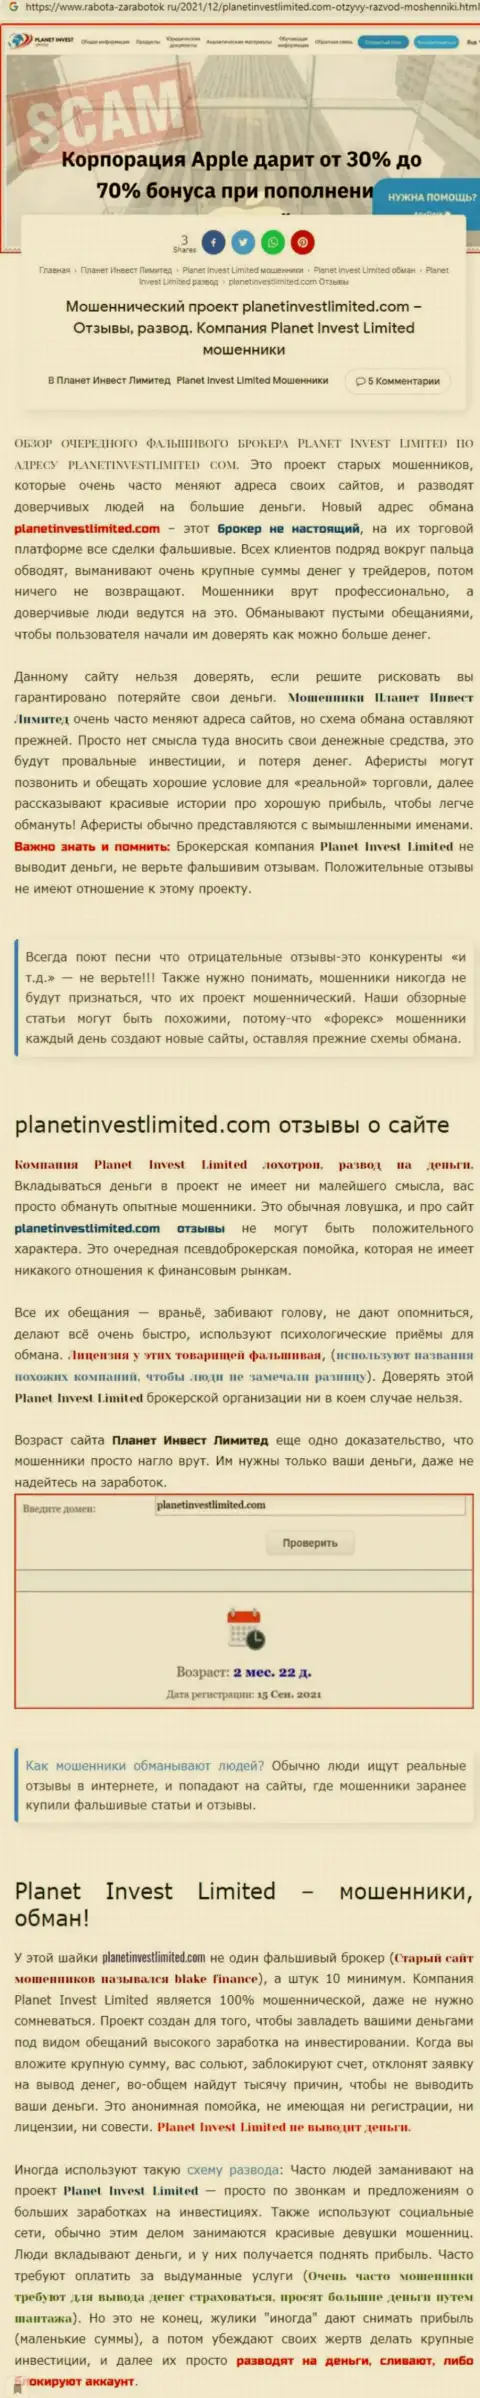 Не опасно ли совместно работать с Planet Invest Limited ? (Обзор неправомерных деяний организации)